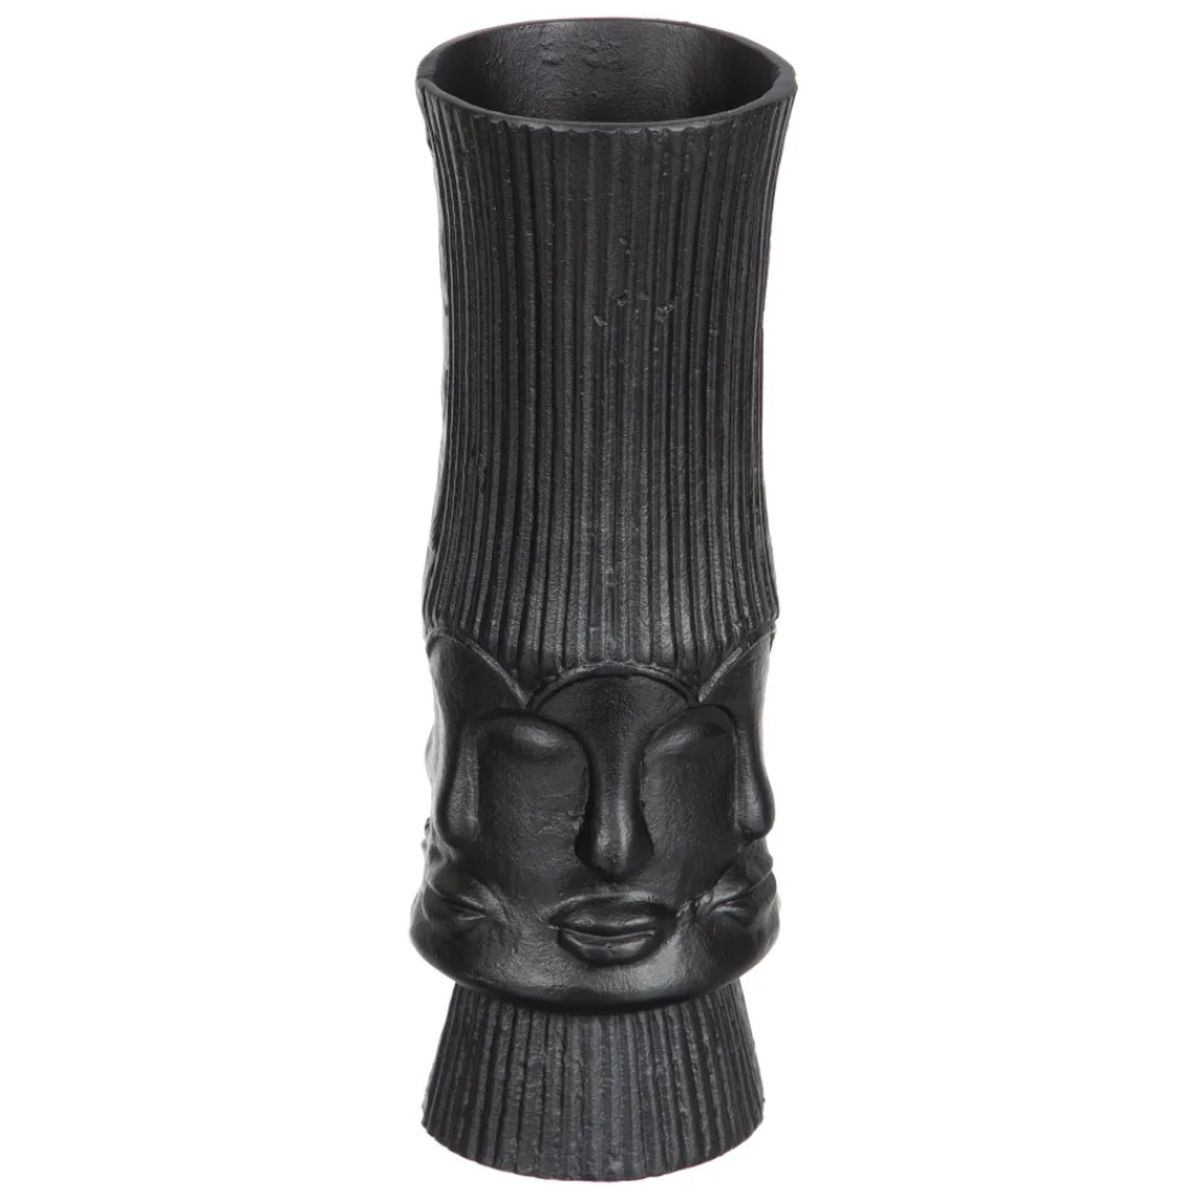 Vase en Cramique noire 34 cm